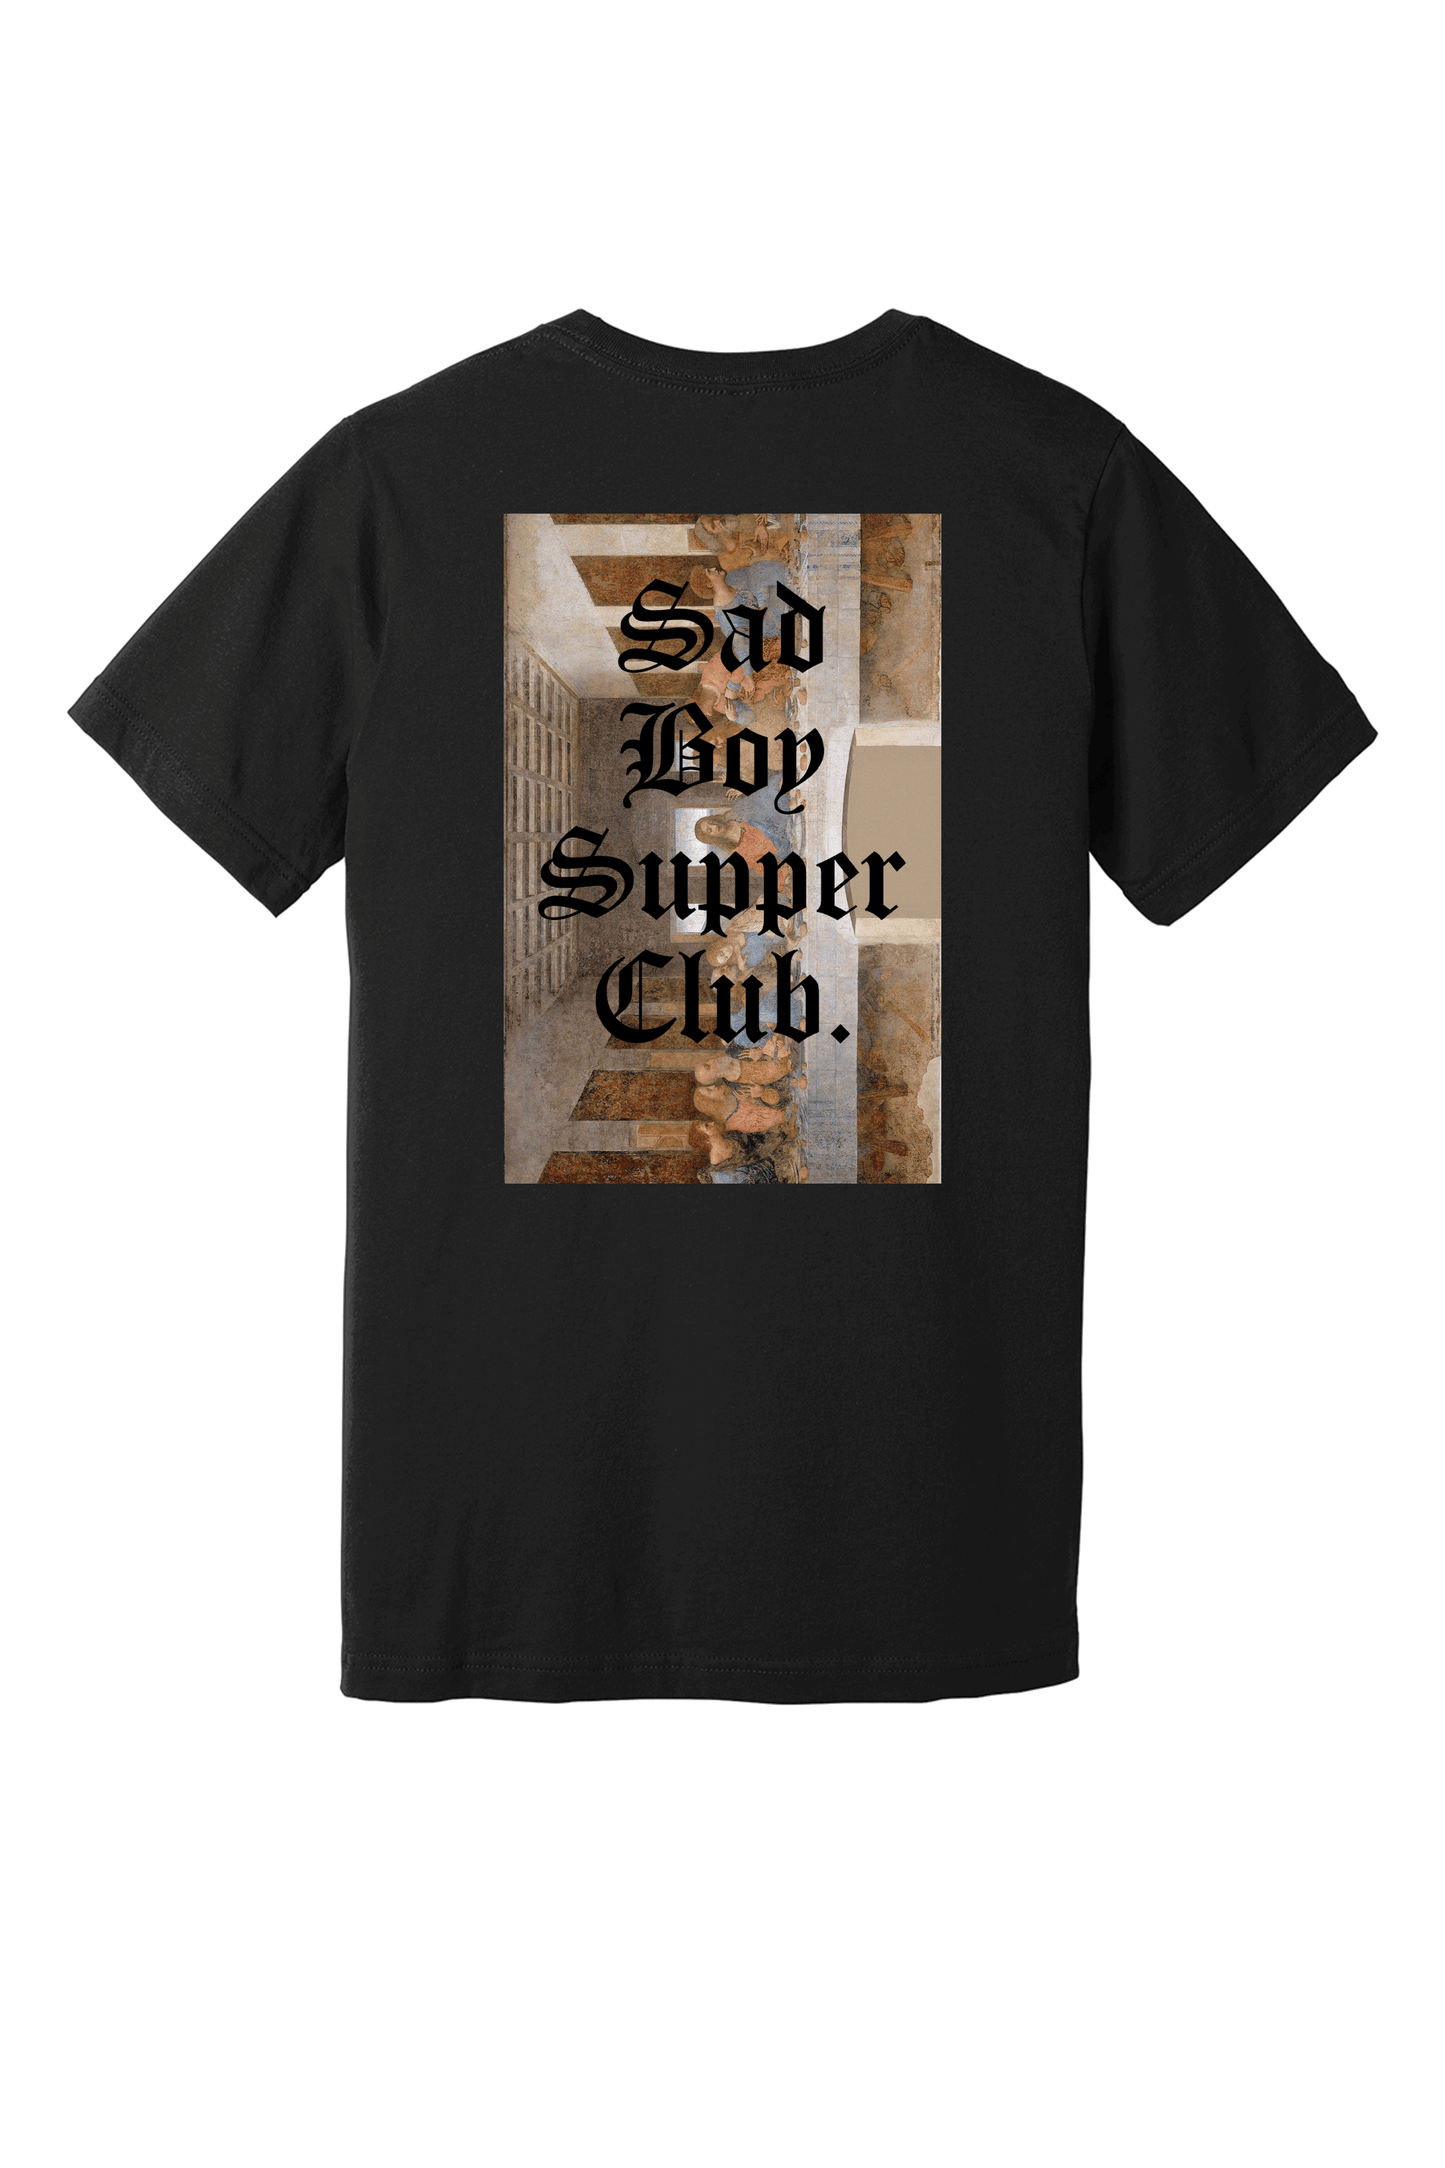 Sad Boy Supper Club